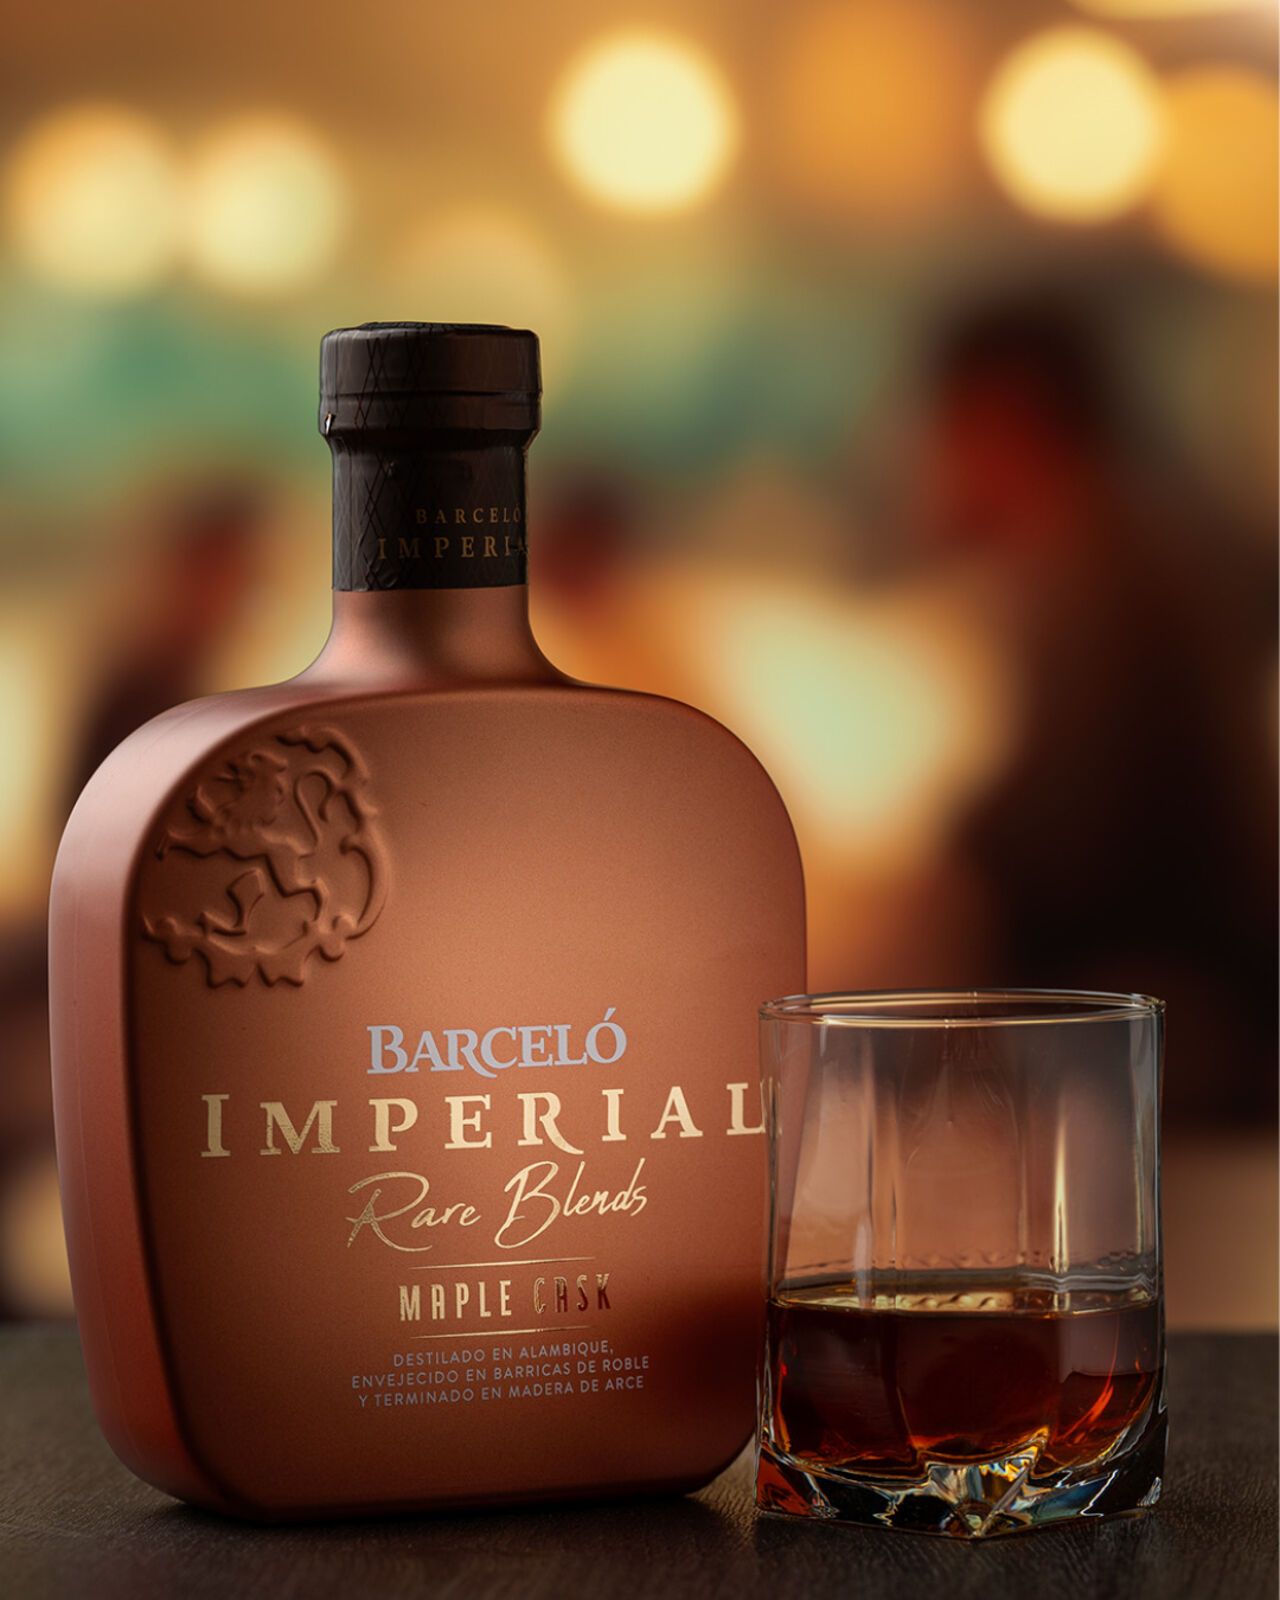 Barcelo révèle le deuxième finish de la collection Rare Blends : Imperial  Maple Cask